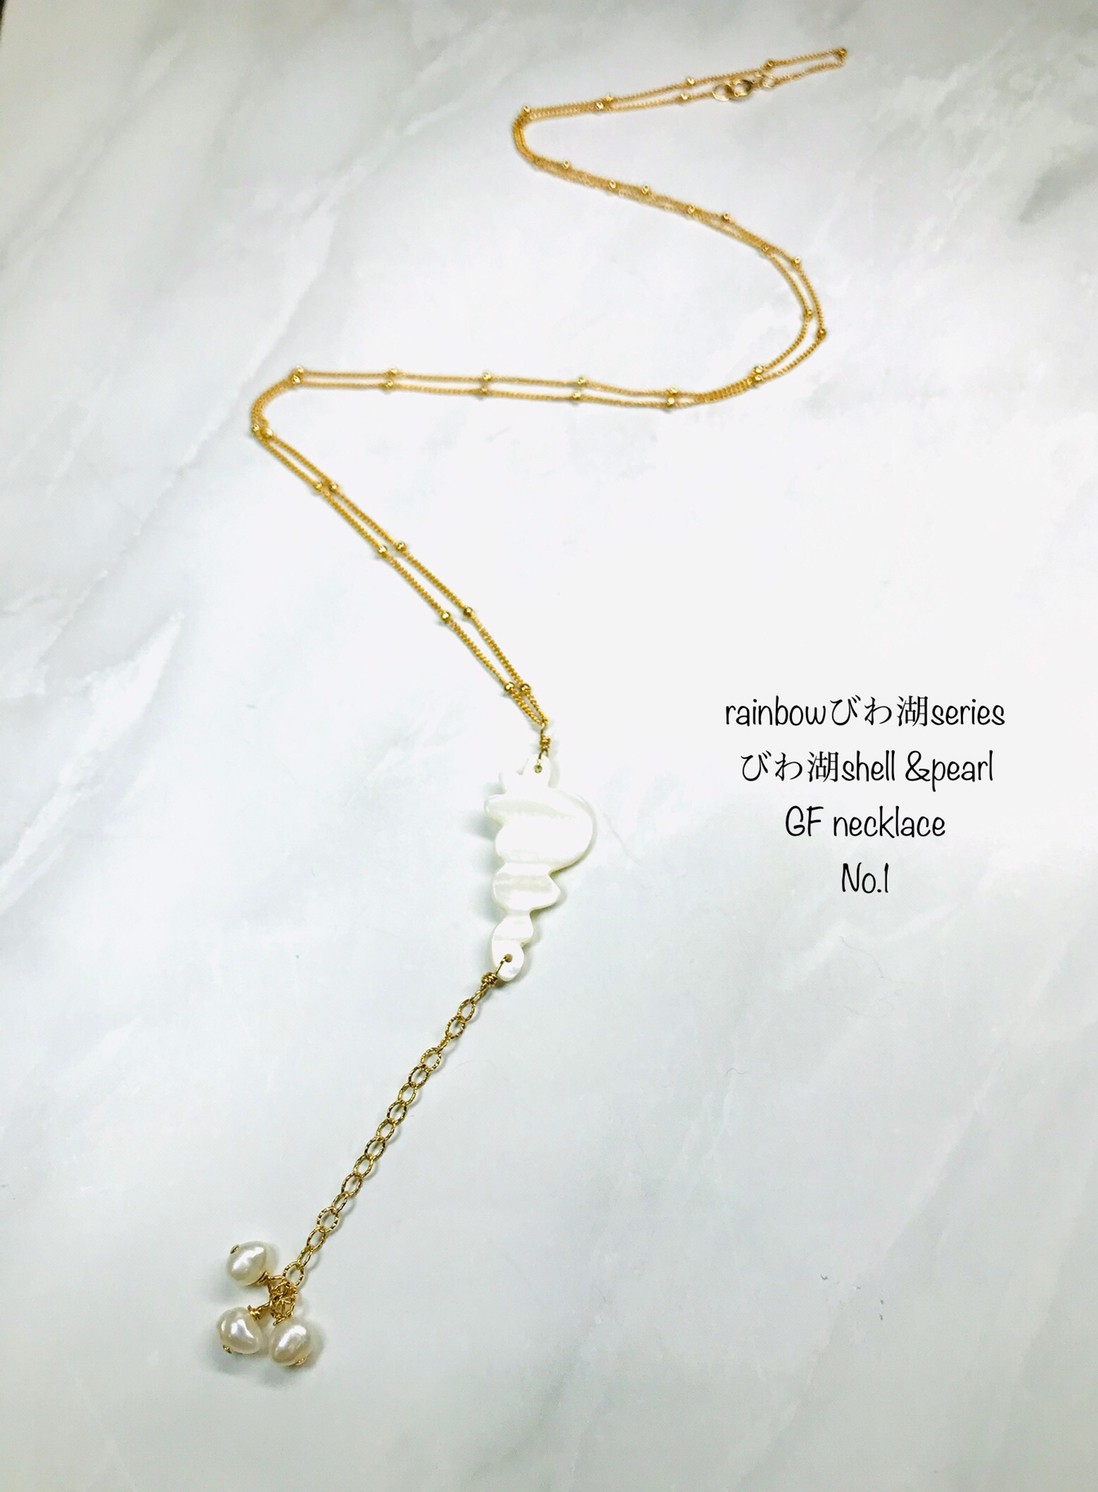 新商品　≪びわ湖shell &pearl GF necklace No.1≫を掲載致しました!!!